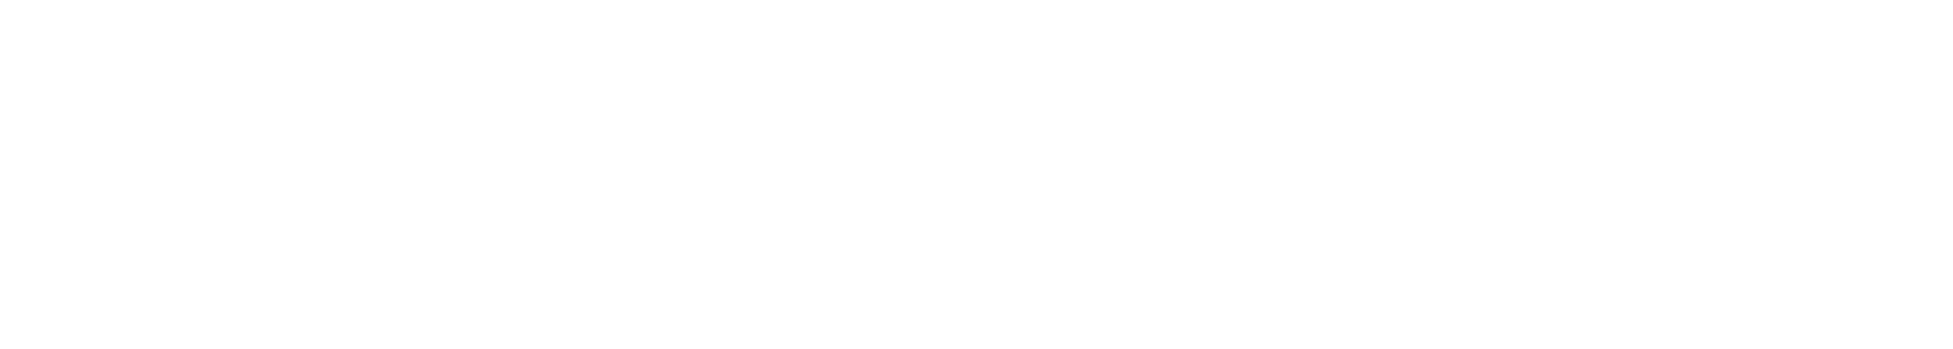 CYOBot Logo